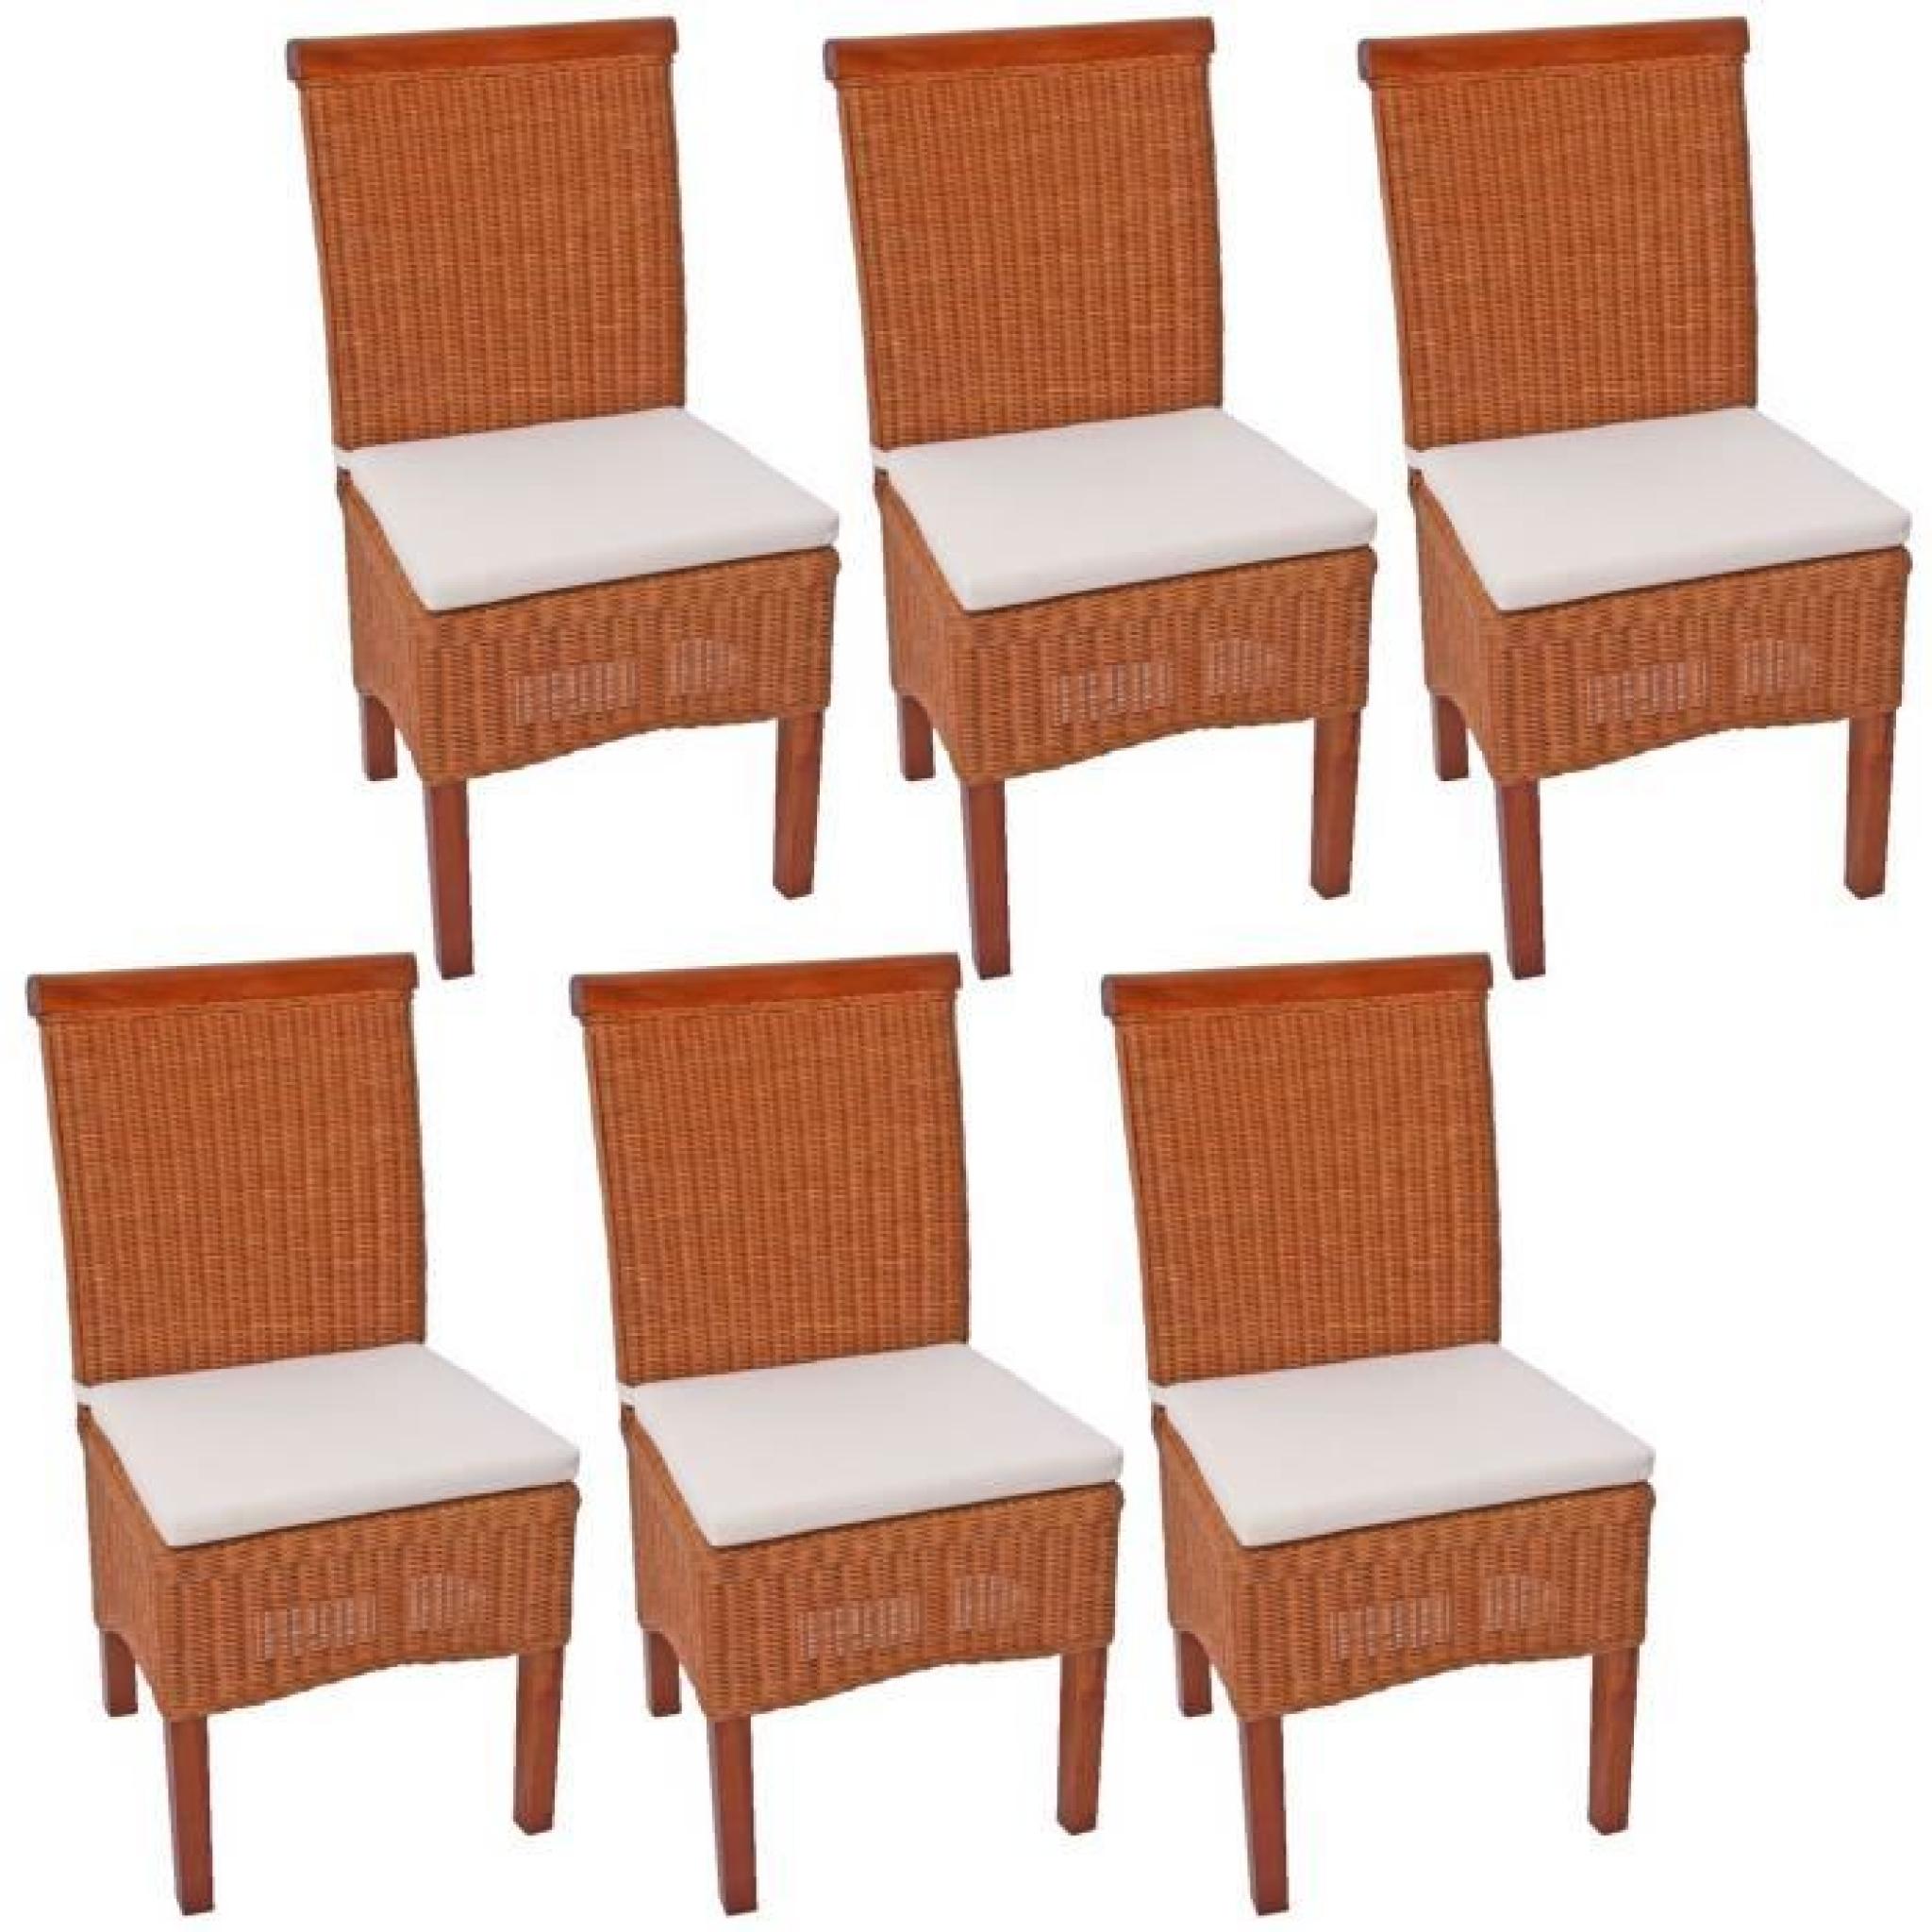 Lot de 6 chaises M42 salle à manger, rotin/bois,46x50x96cm, avec coussins.